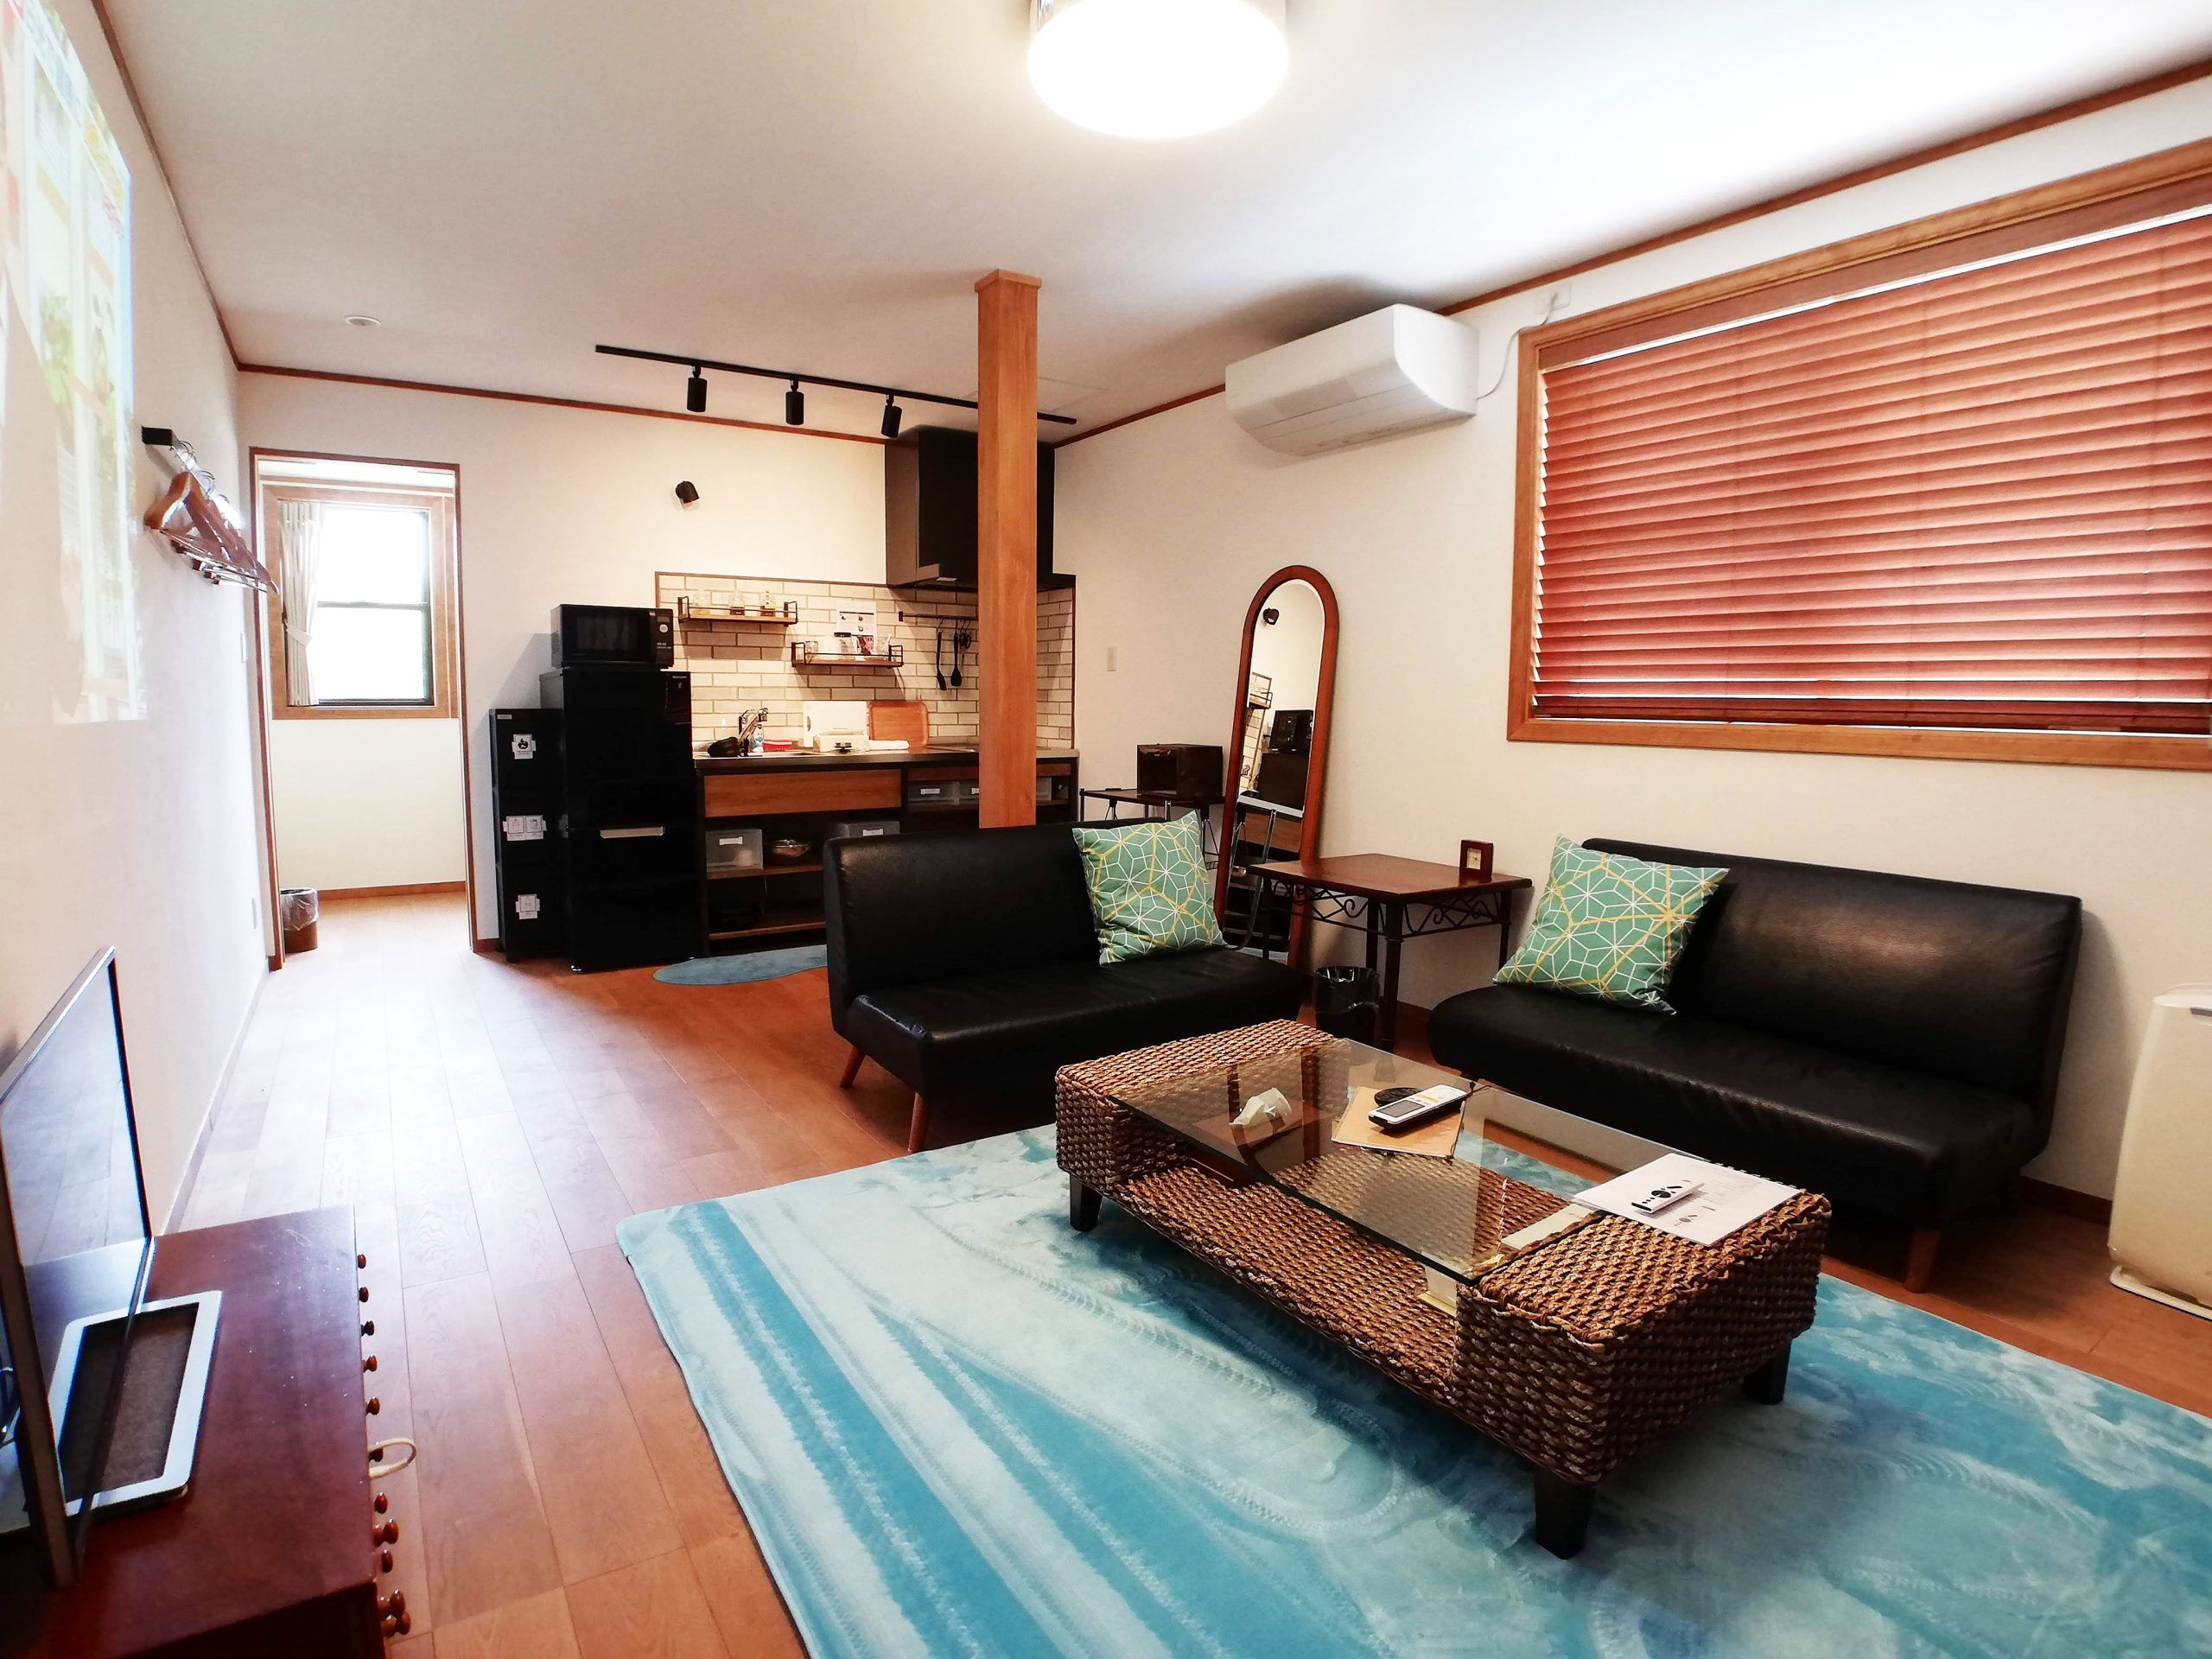 広々とした客室。漆喰の壁と床の無垢材が事前を感じさせる。キッチンと青いじゅうたんが特徴的なお部屋